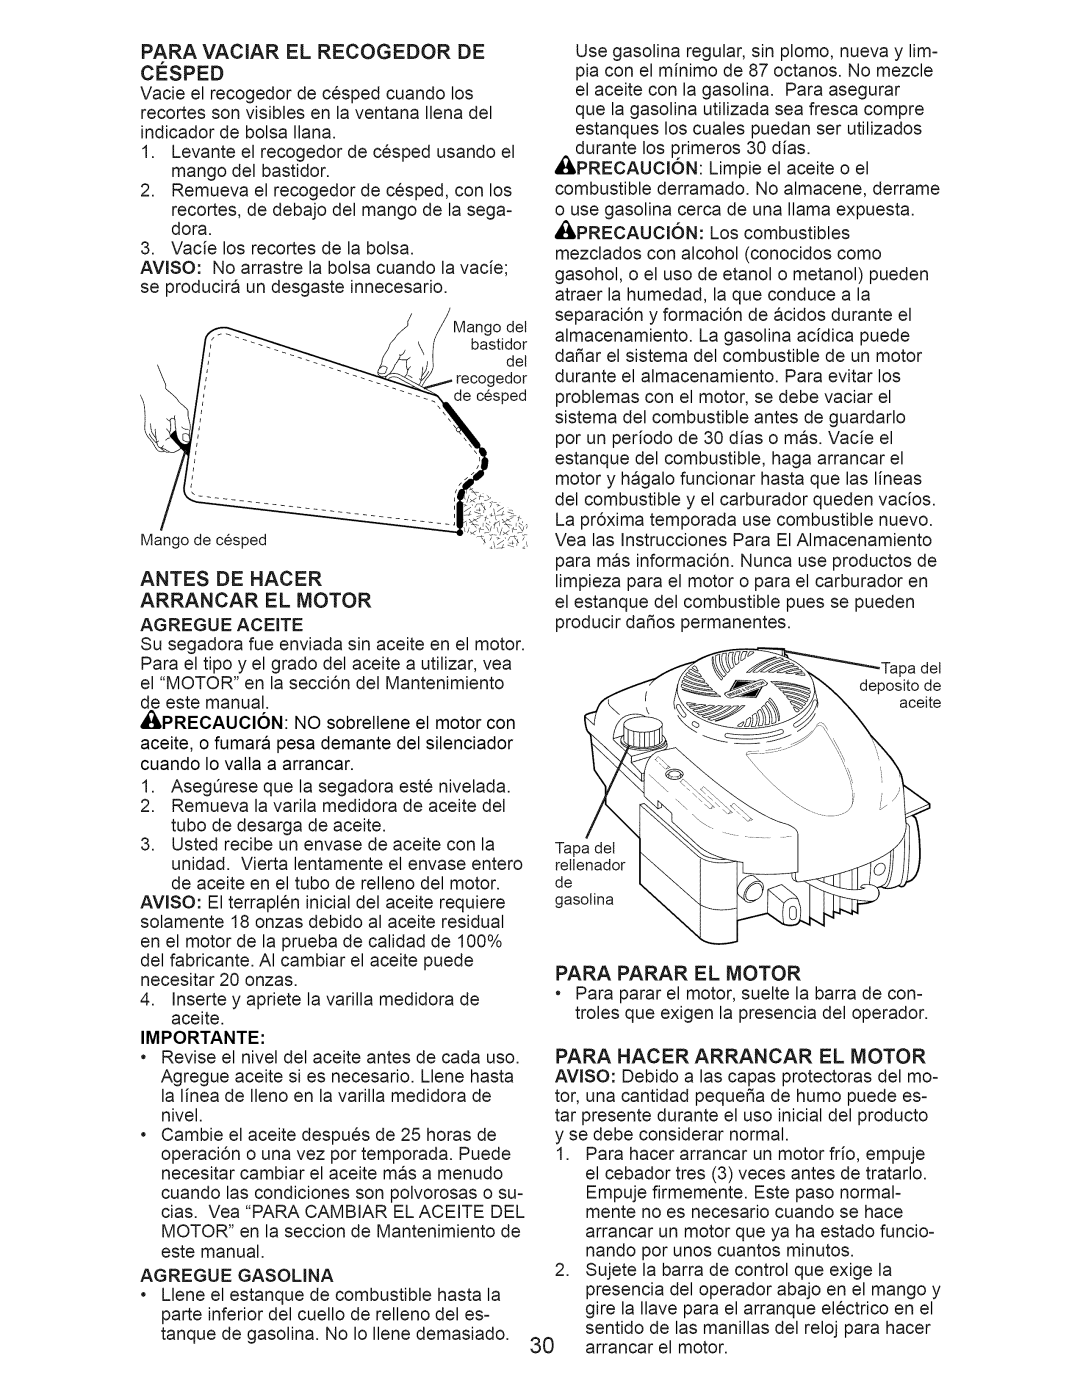 Craftsman 917.374363 manual Antes De Hacer Arrancar El Motor, Para Parar El Motor 